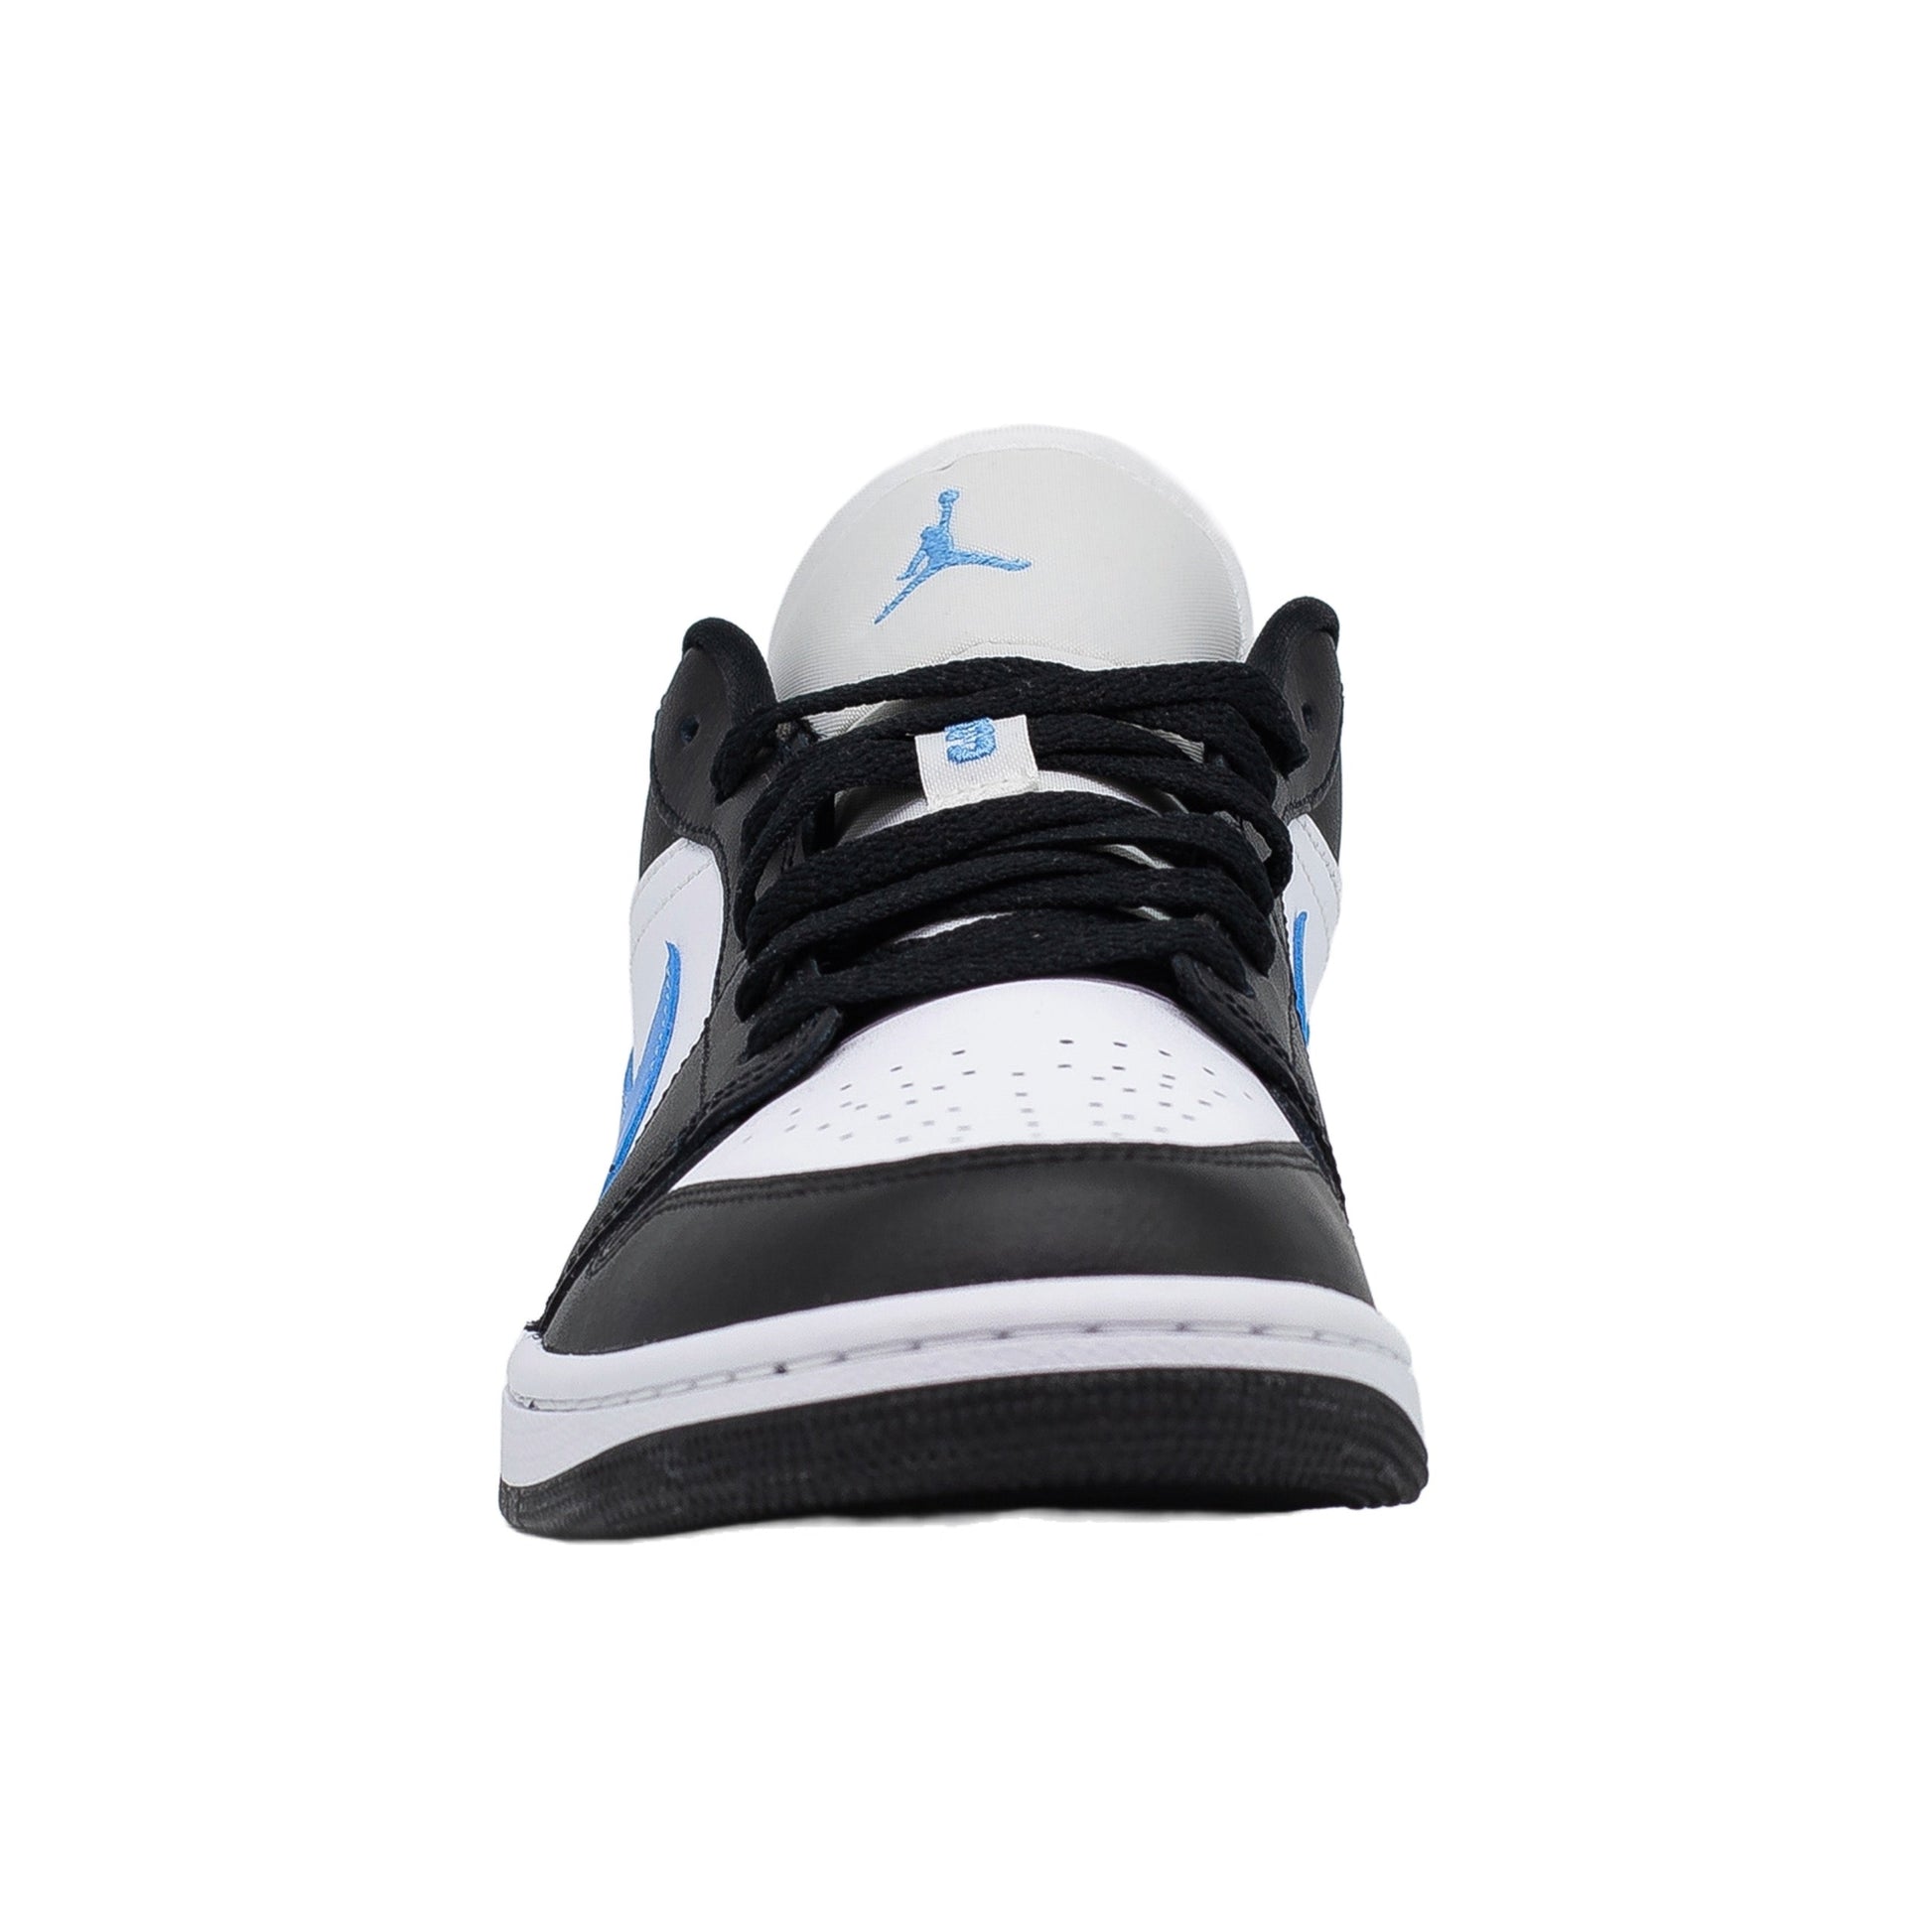 Women's Air Jordan 5 Anthracite Sneaker tee black Misunderstood Bull, Black University Blue